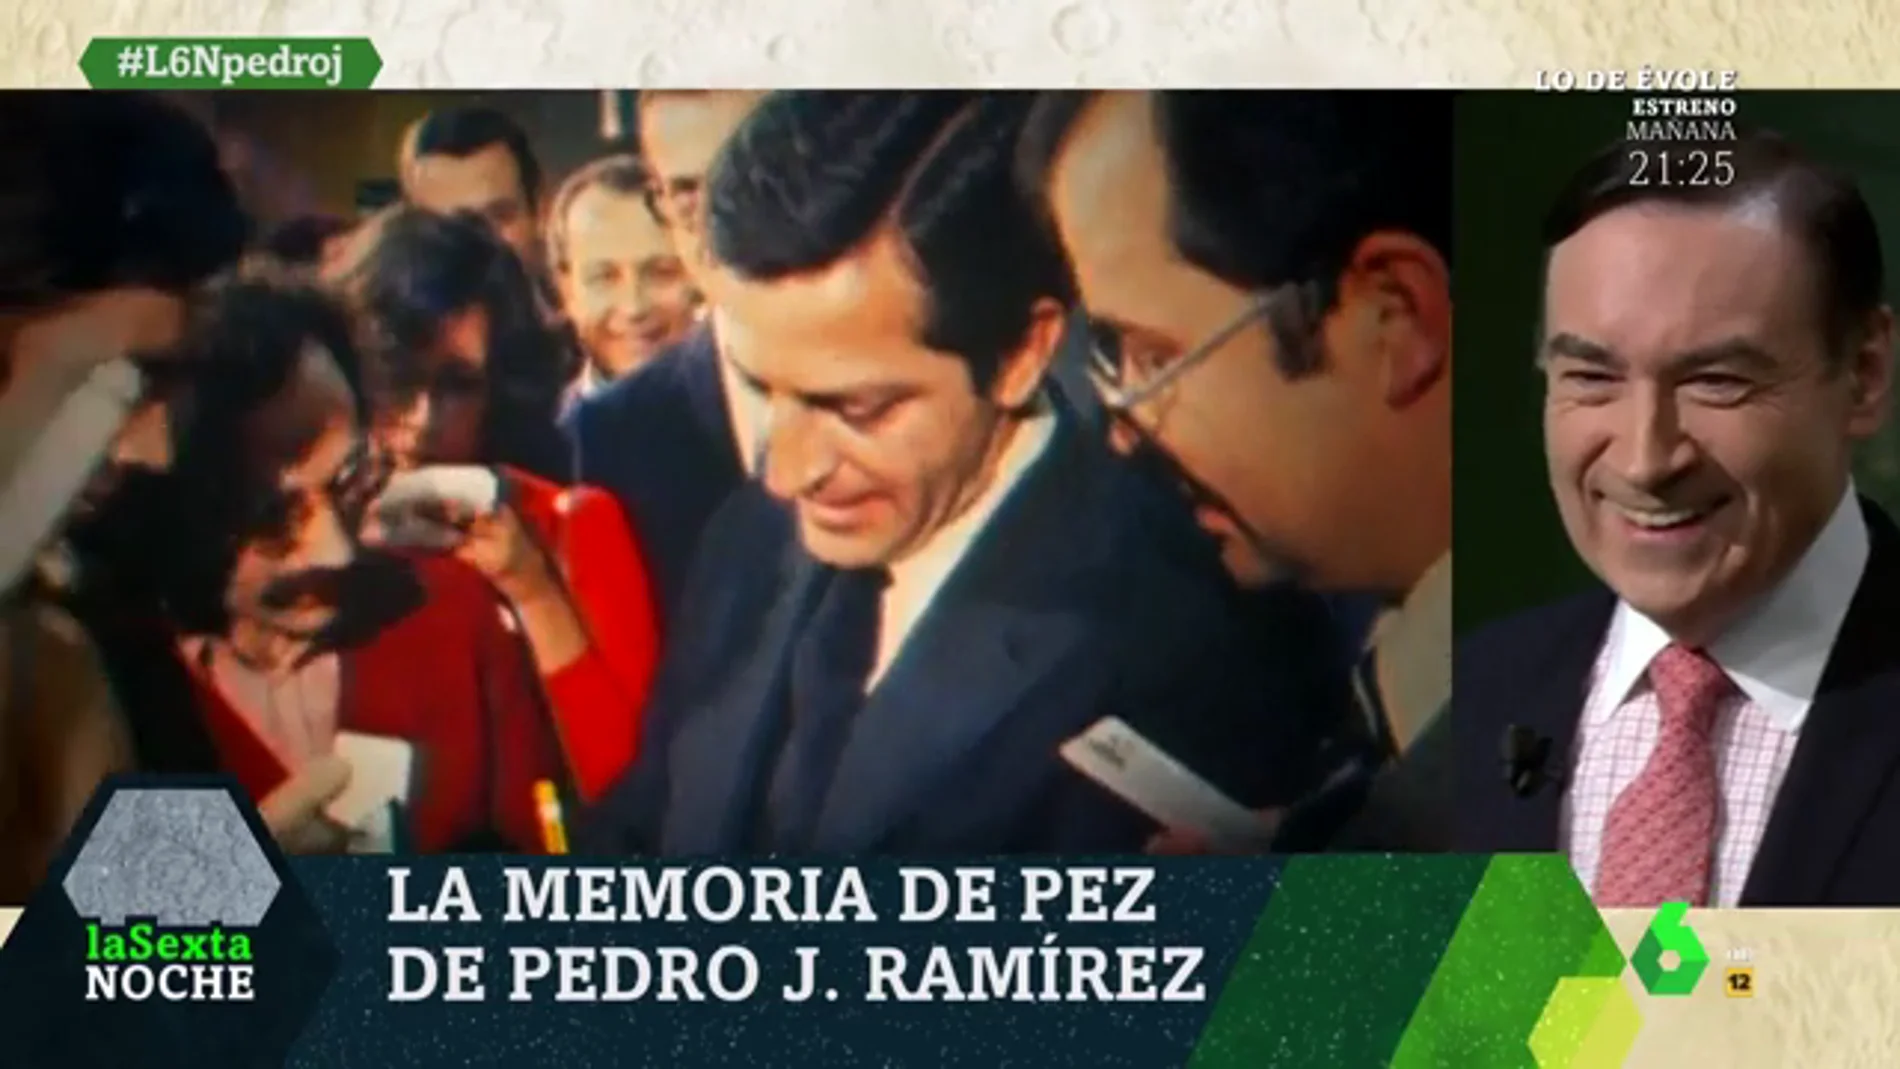 Así fue el momento en el que Pedro J. Ramírez le pidió un autógrafo a Adolfo Suárez antes de las elecciones de 1977